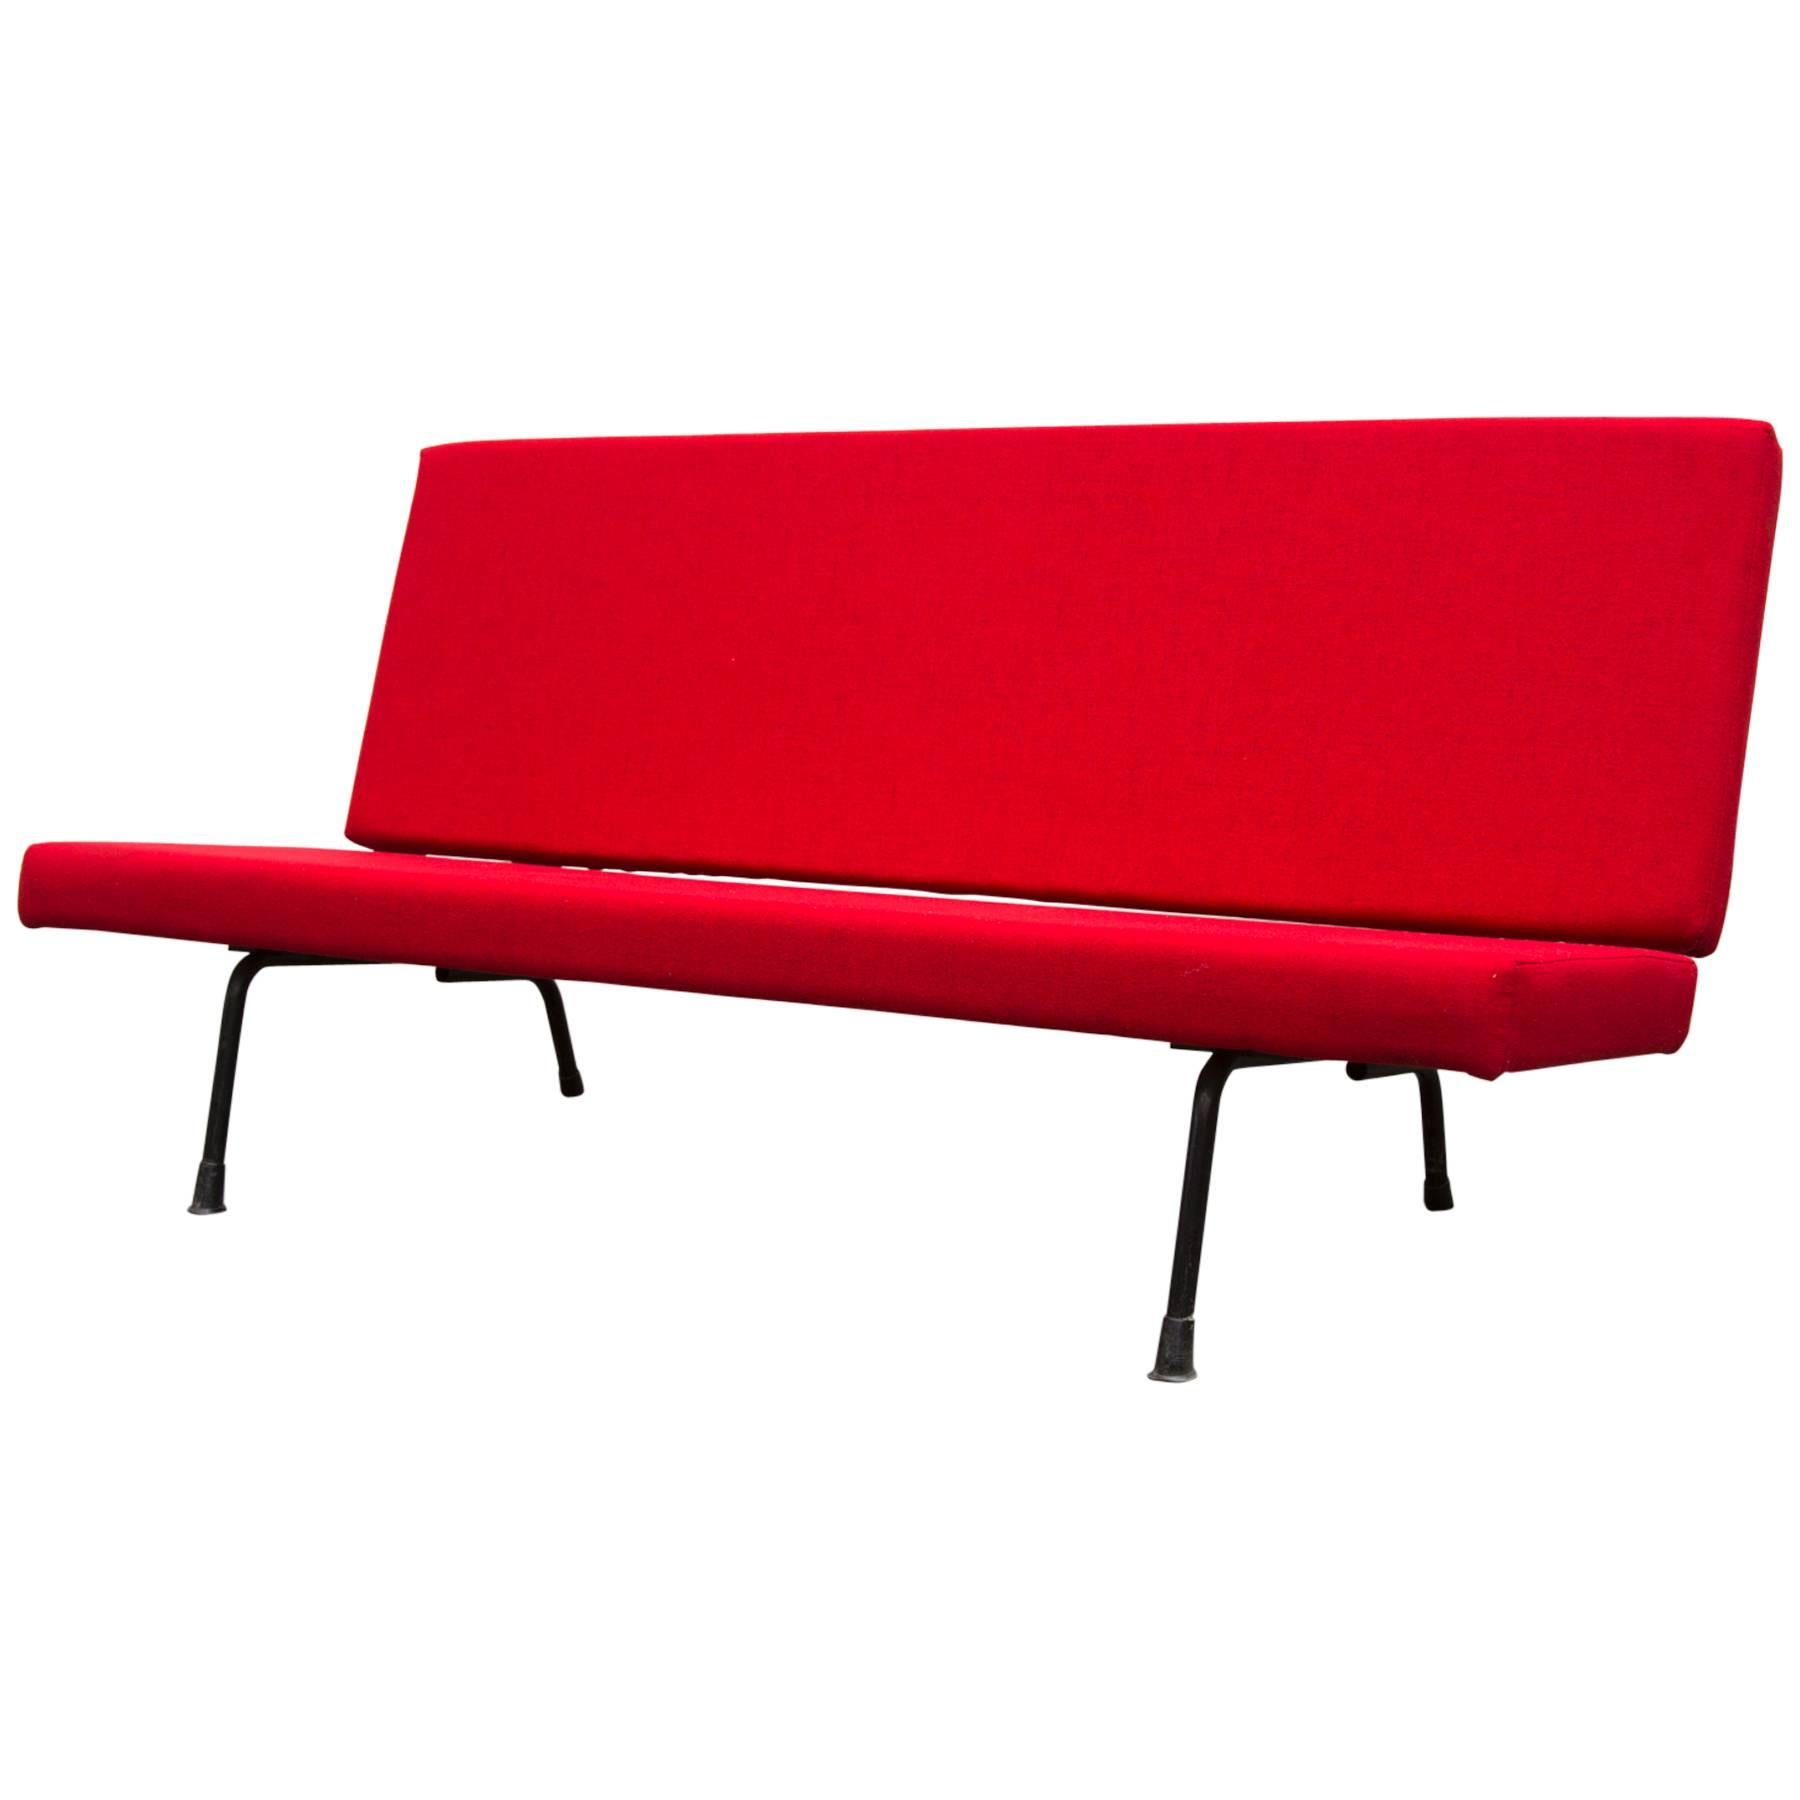 Gispen Model 1712 sofa For Sale